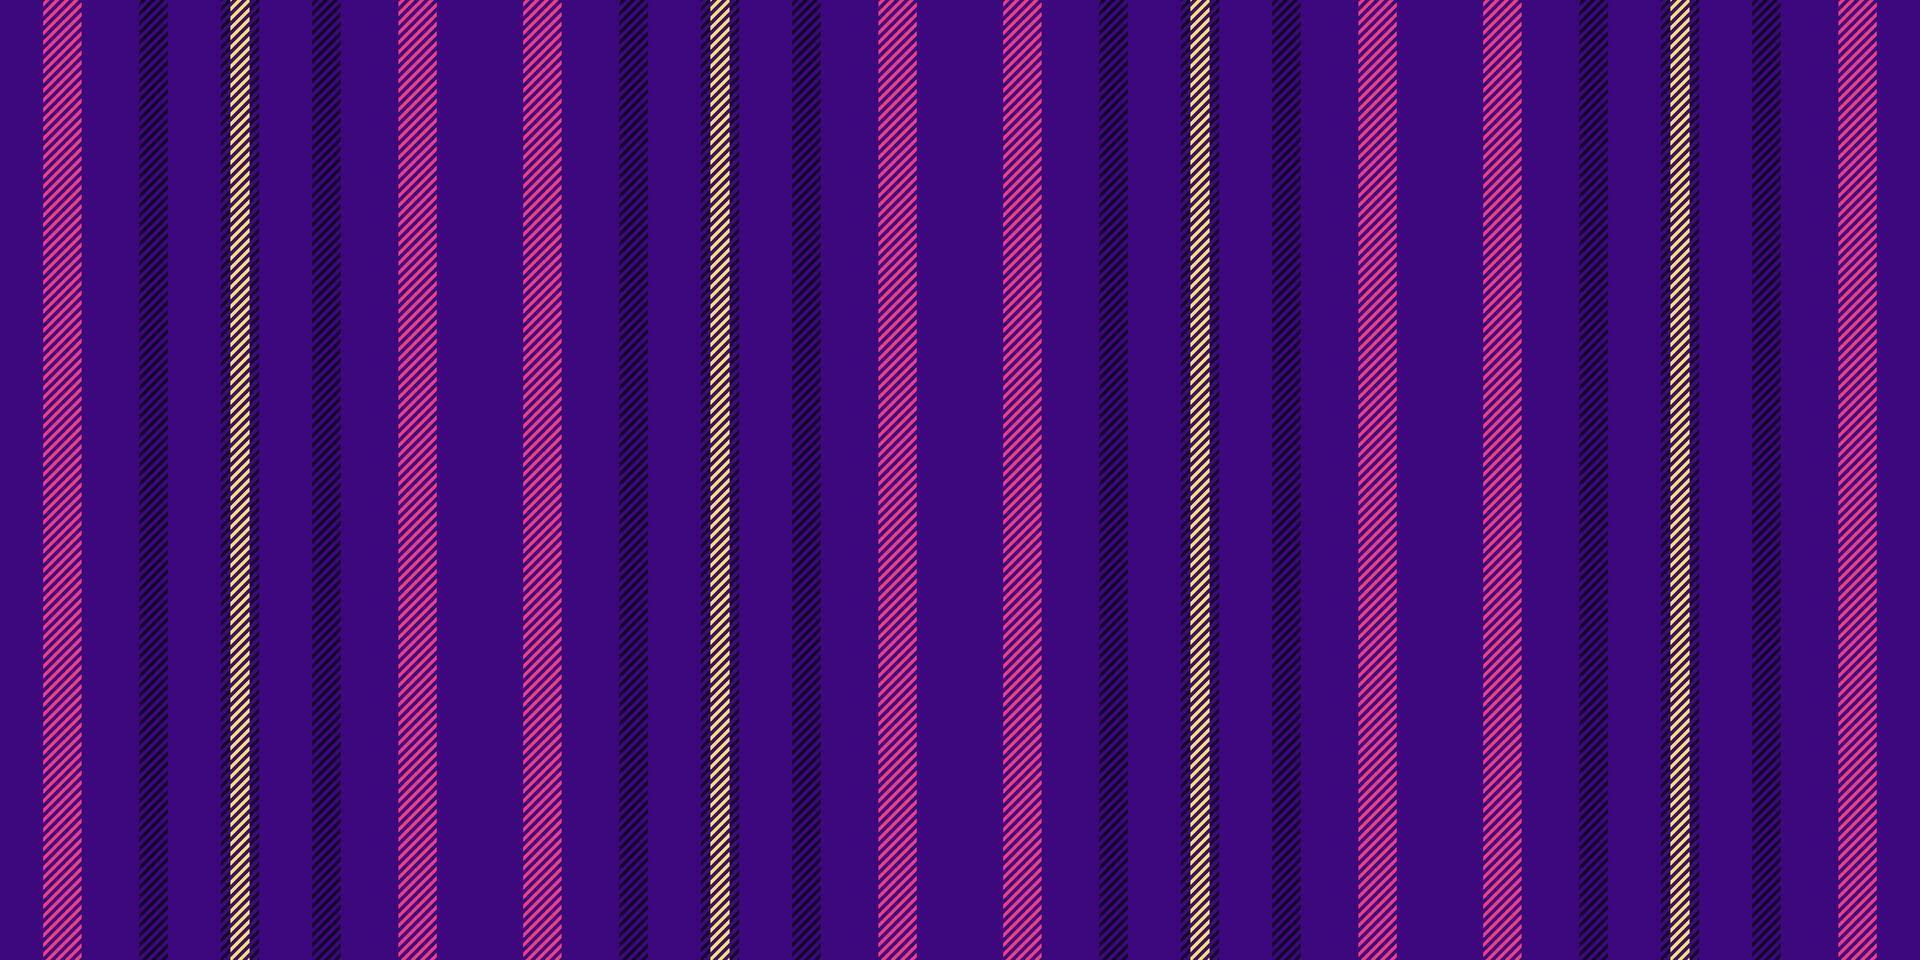 Vorhang Stoff Textur Muster, Maschinen Linien Streifen Hintergrund. nett Vektor nahtlos Textil- Vertikale im violett und dunkel Farben.